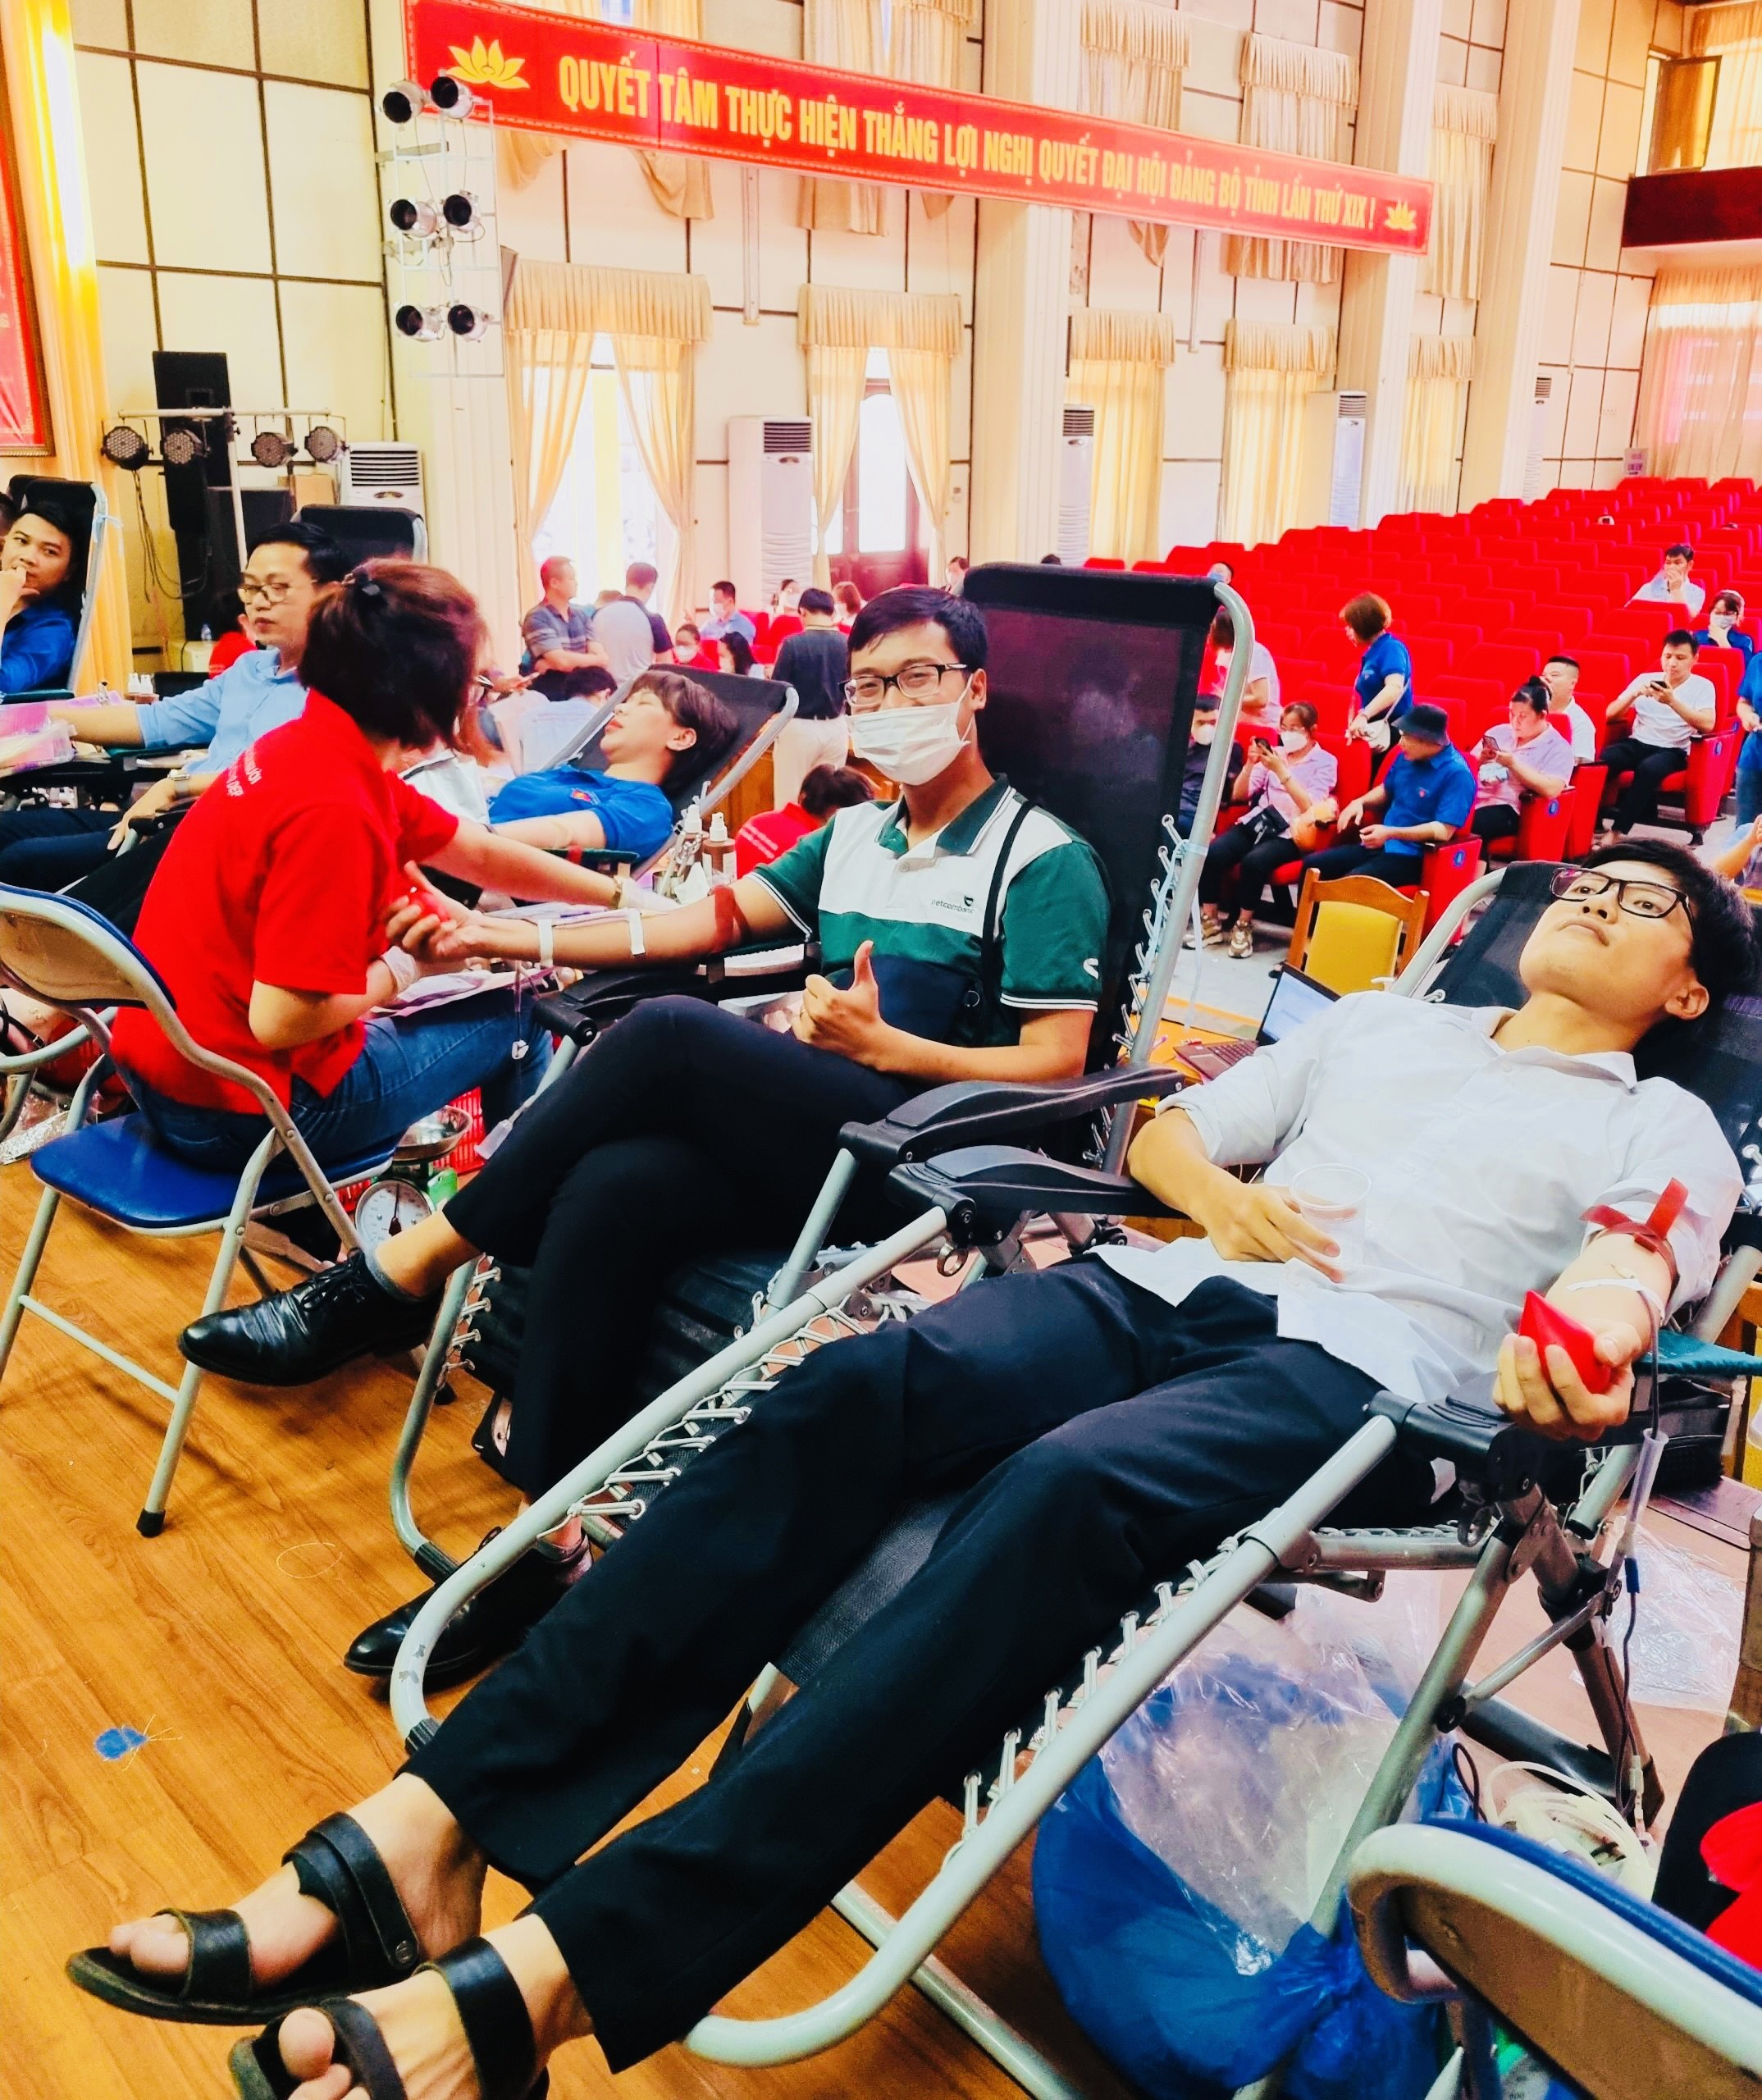 Vietcombank Hưng Yên với “Hành trình hiến máu nhân đạo”